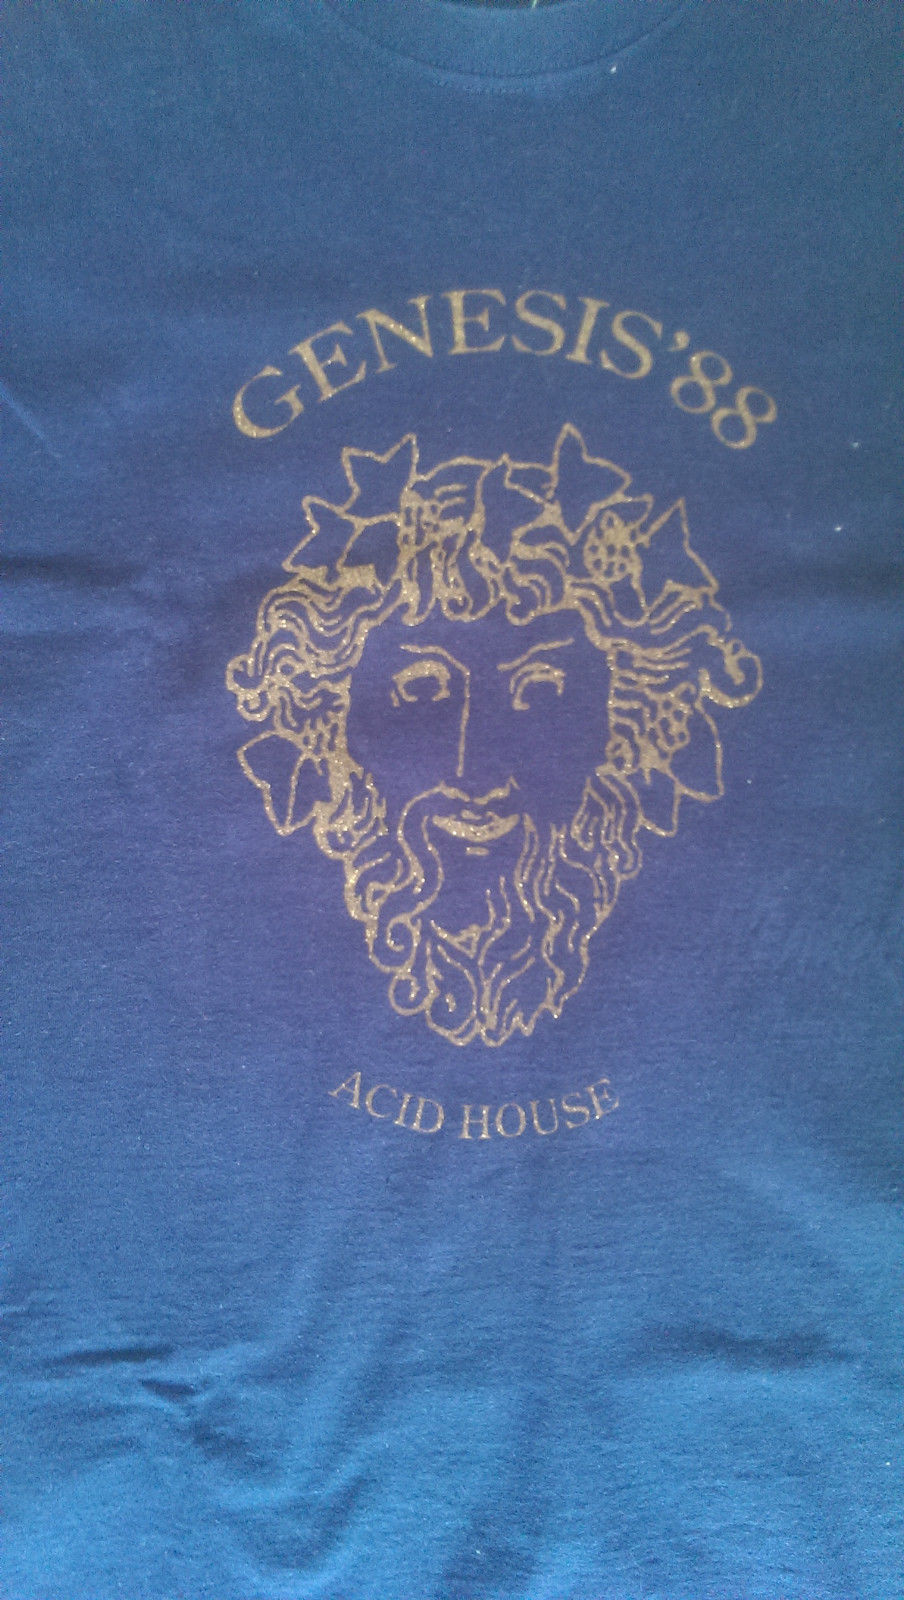 genesis '88 acid house